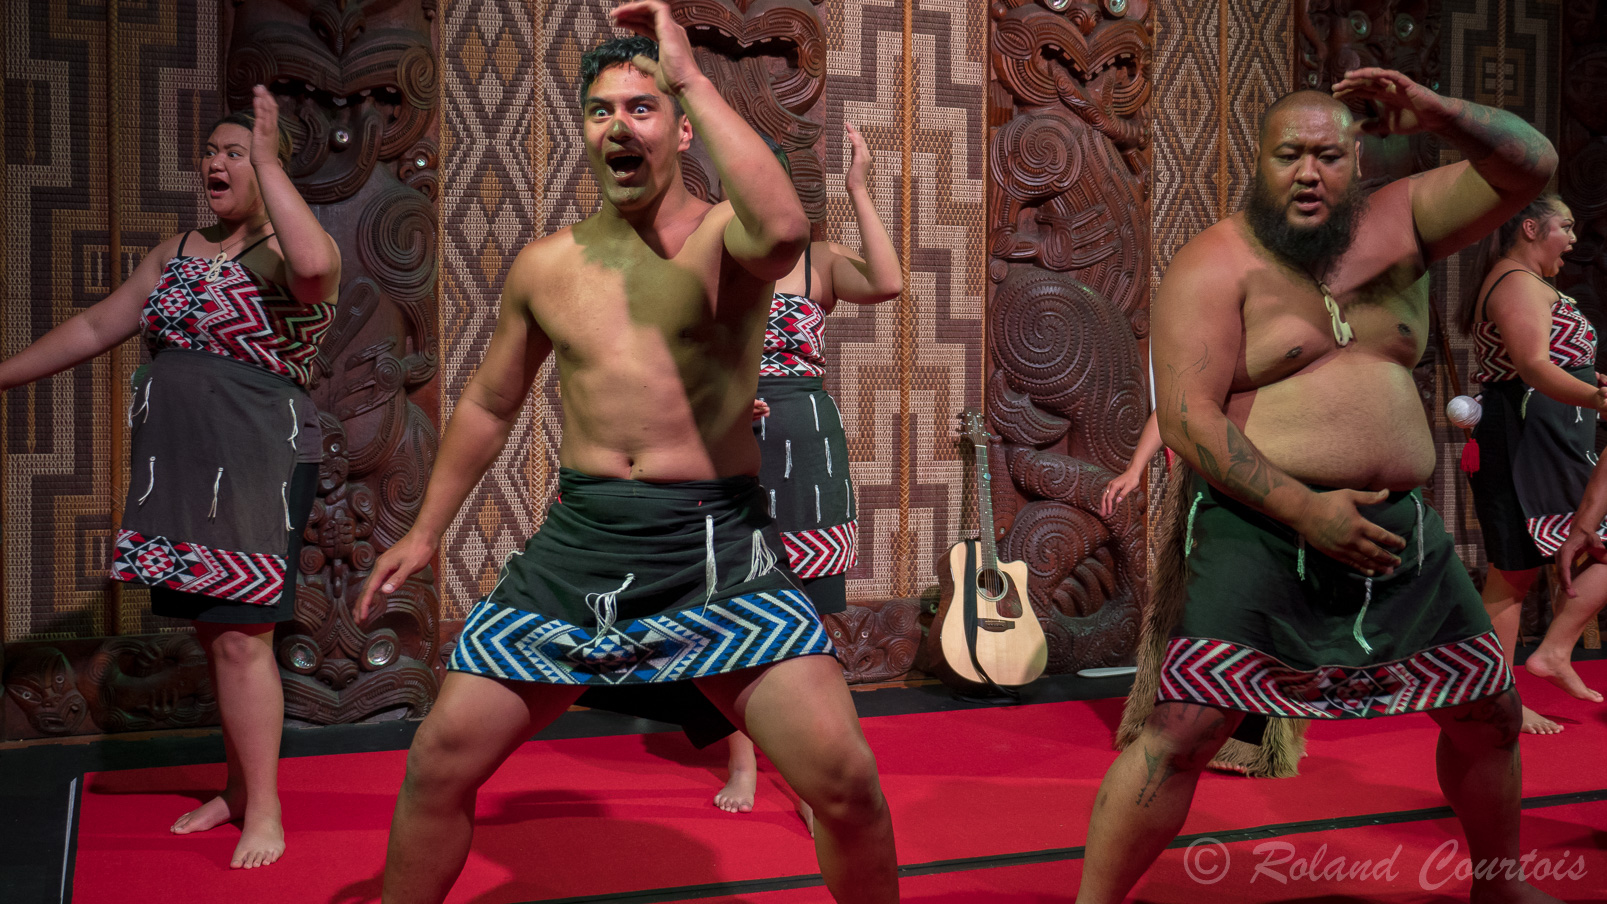 La troupe locale, Te Pitowhenua, présente la culture indigène néozélandaise dans le Te Whare Runanga. Il s’agit d’un spectacle de waita (chanté), au poi, à des jeux de colle, au maniement des armes maori, ainsi qu'au célèbre haka.